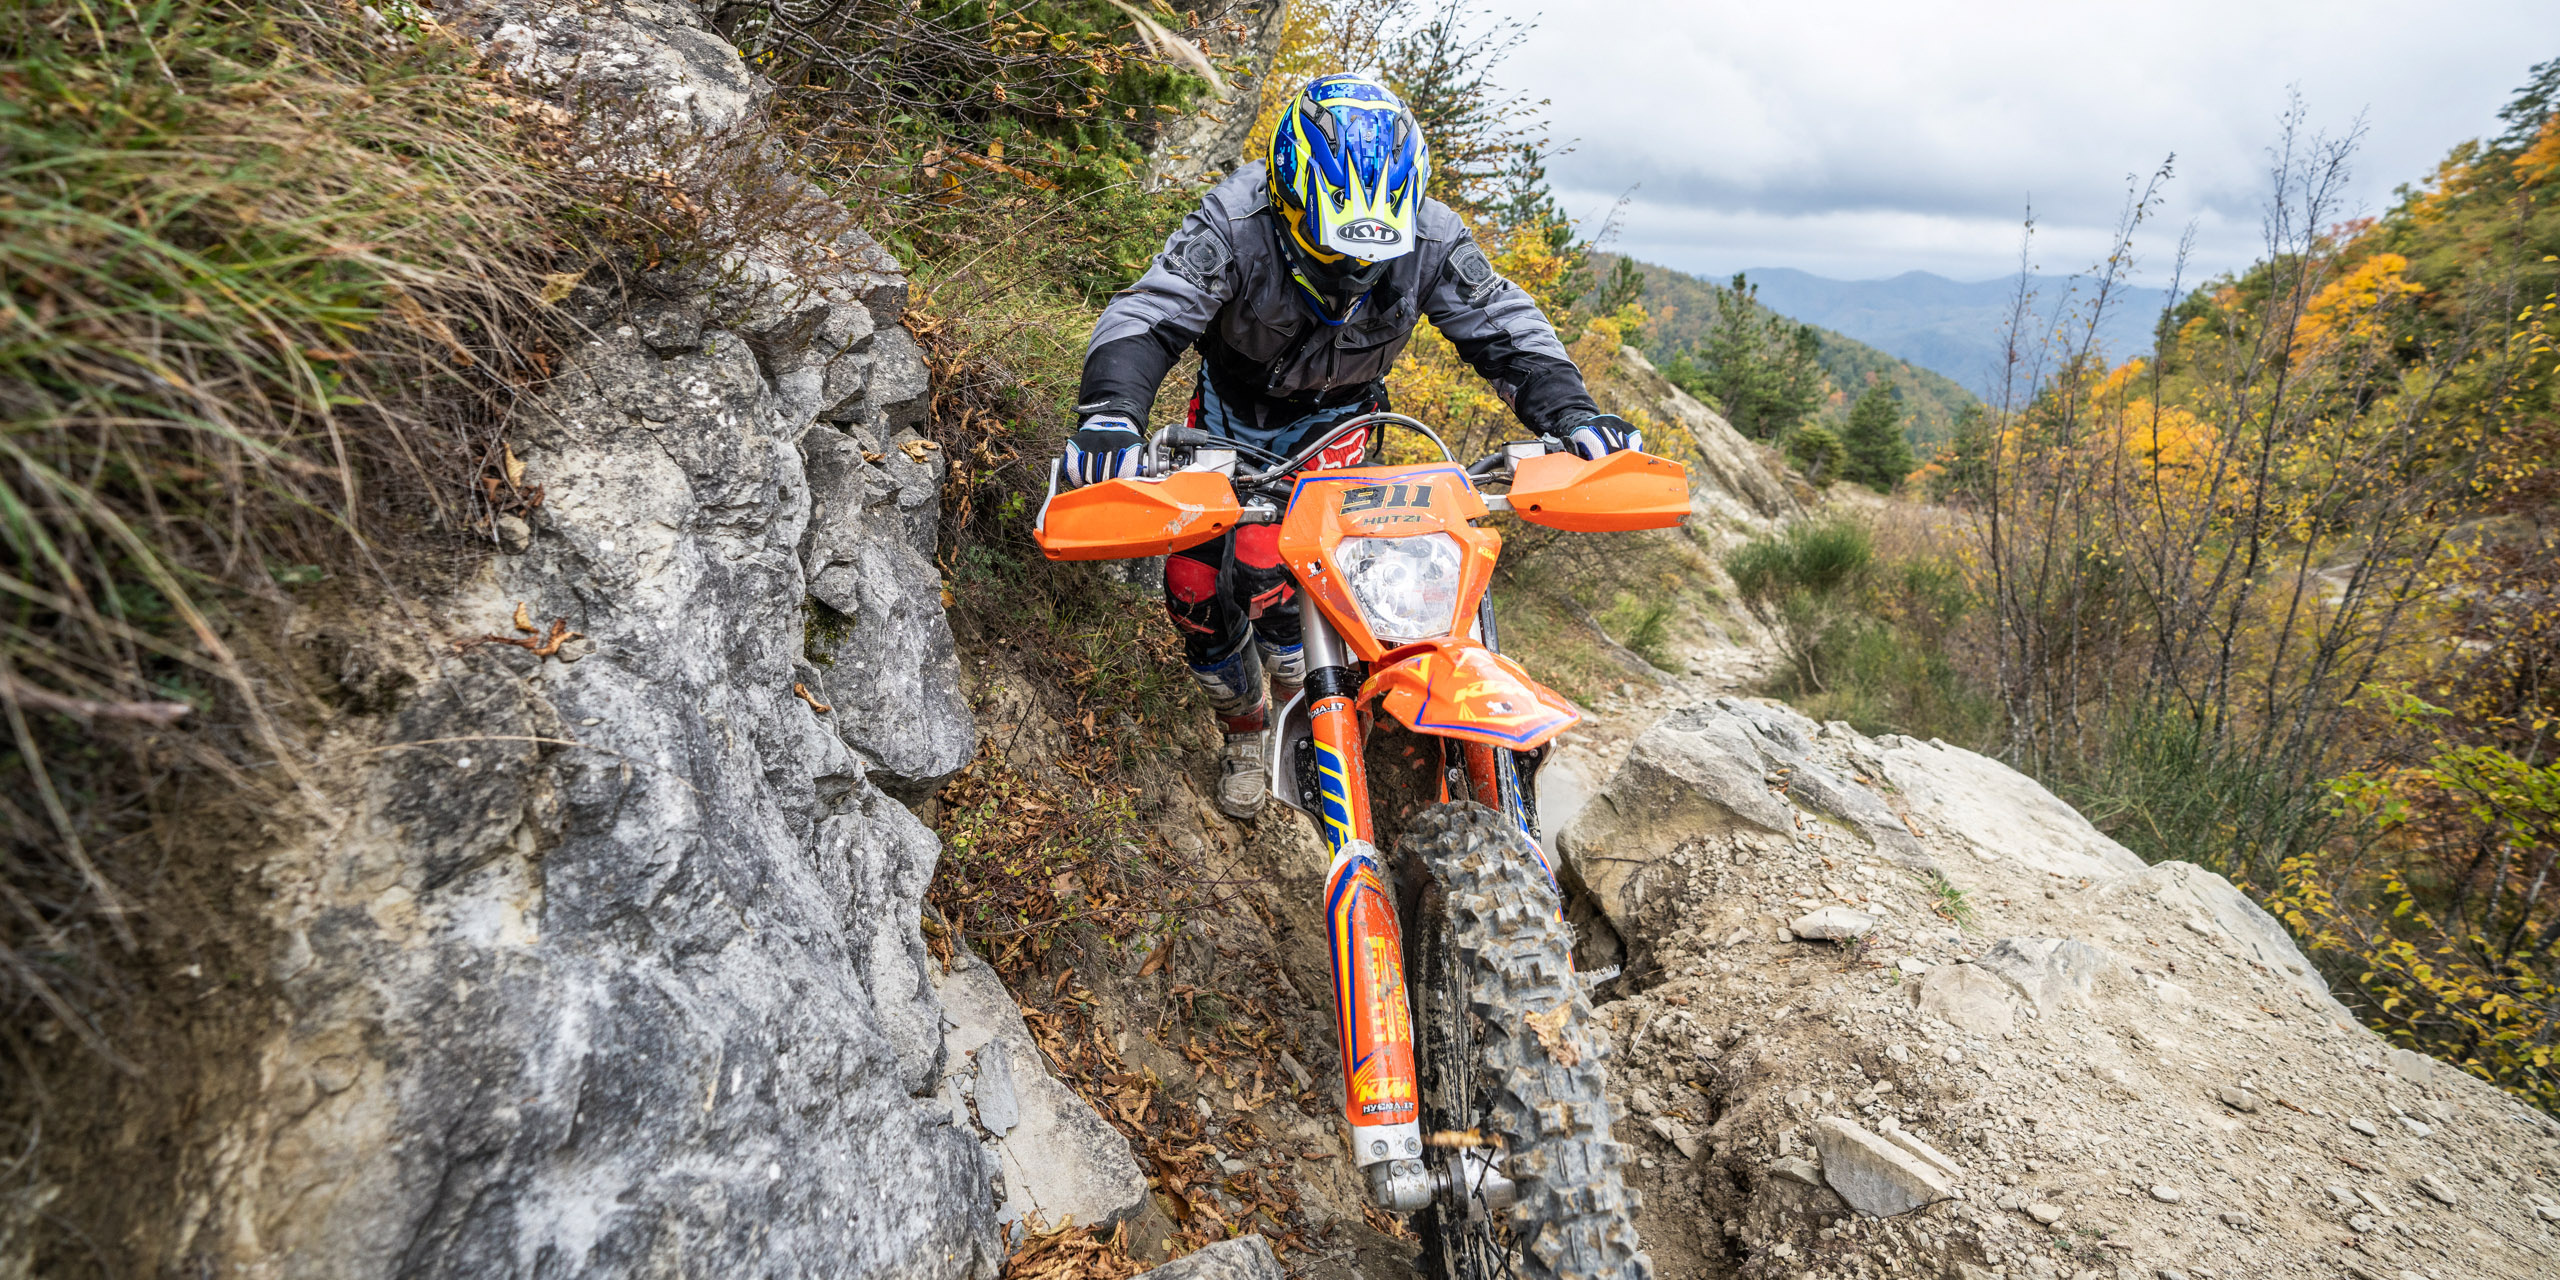 Enduro Motorbike: Extreme Riding On The Mountain Serpentine, KTM 690 Enduro R. 2560x1280 Dual Screen Wallpaper.